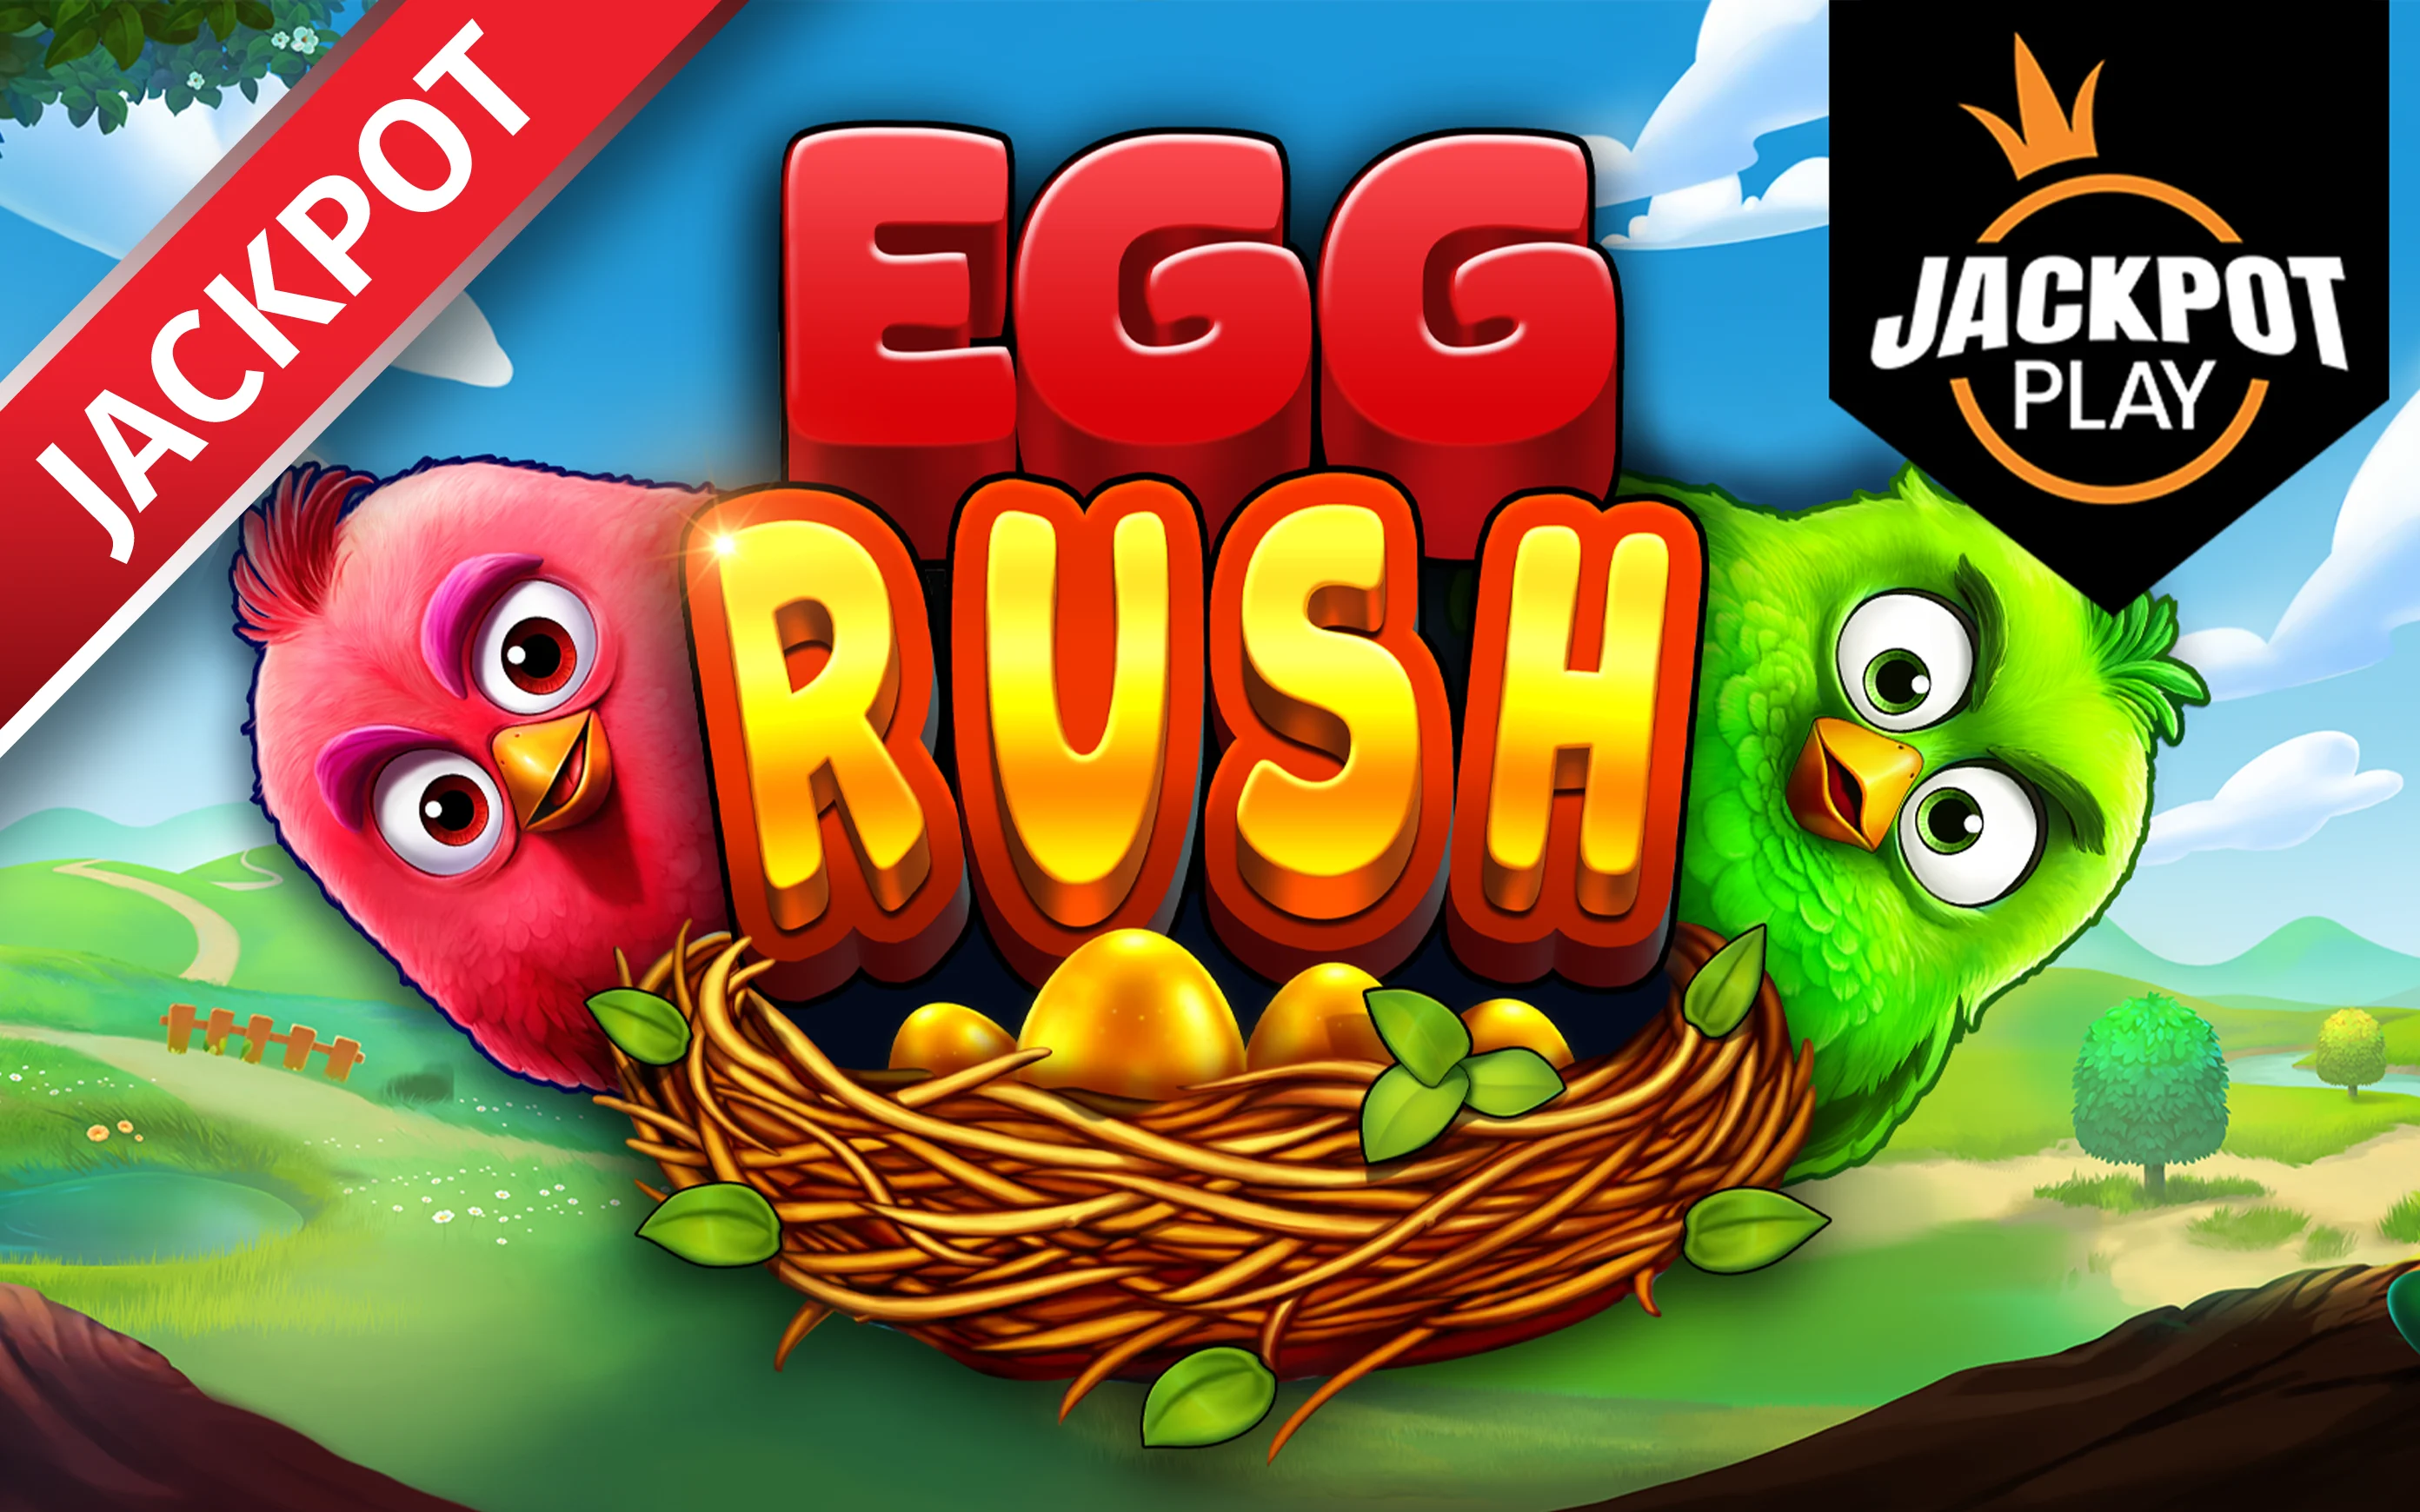 Играйте в Egg Rush Jackpot Play в онлайн-казино Starcasino.be